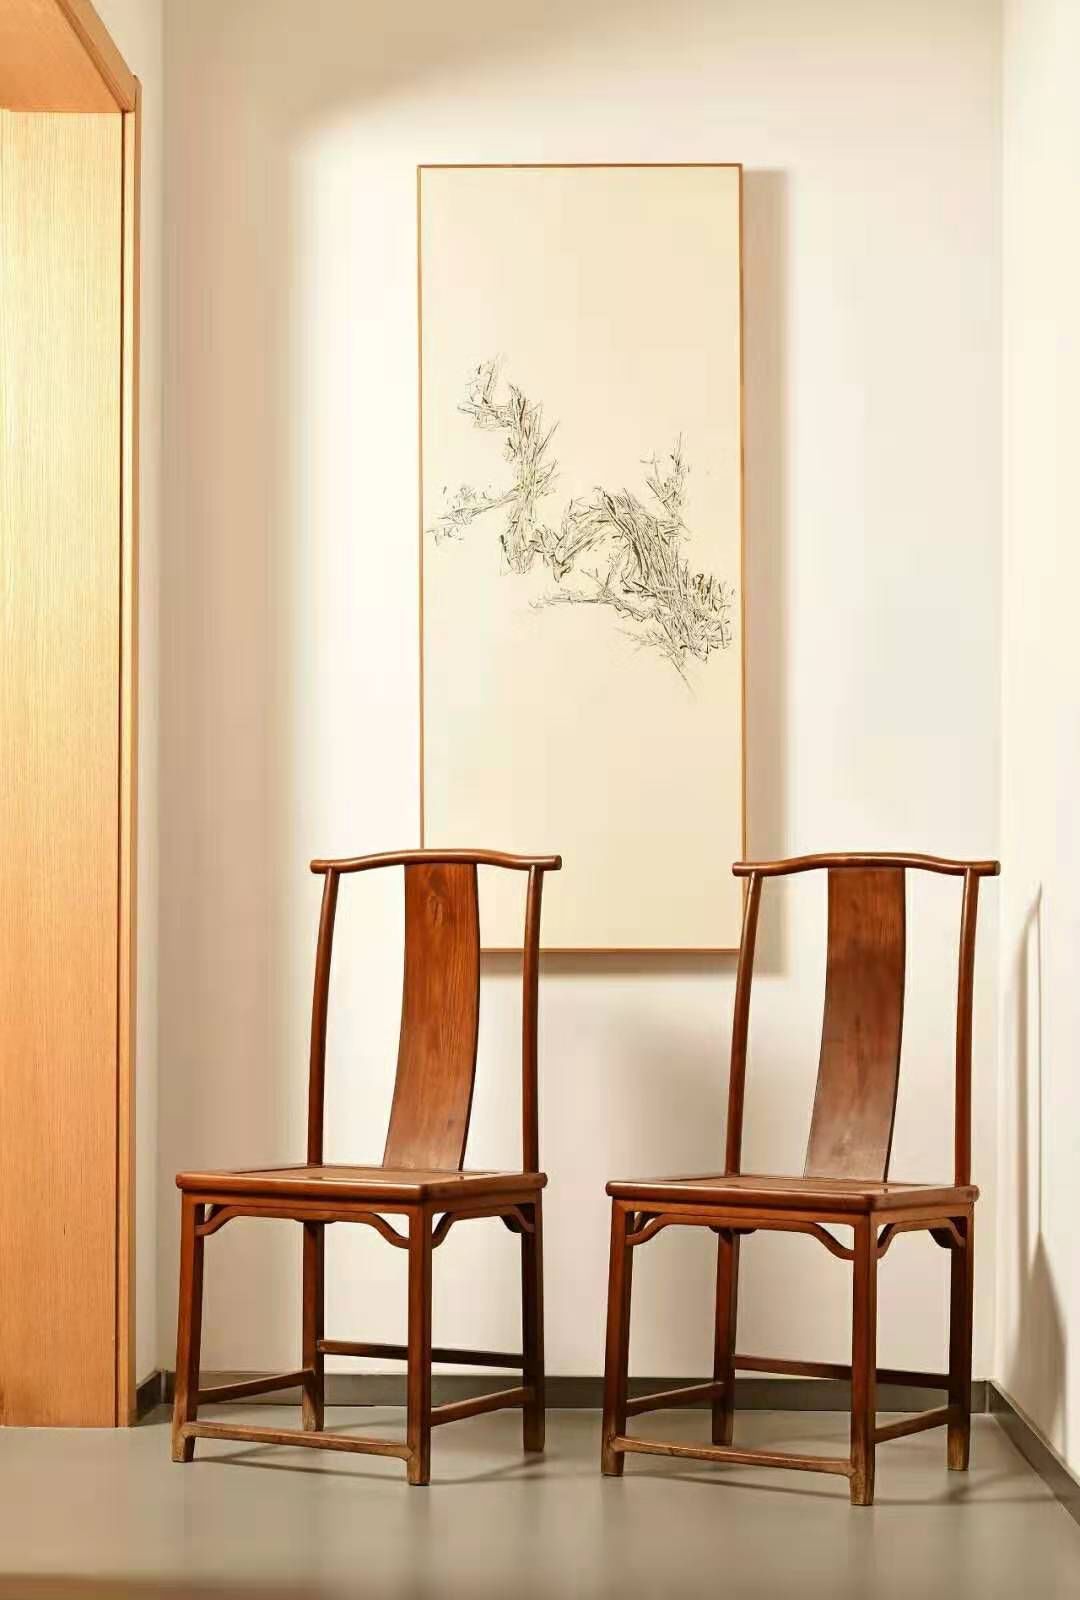 灯挂椅是明代最为普及的椅子样式,也可以说是自五代和宋以来的普及